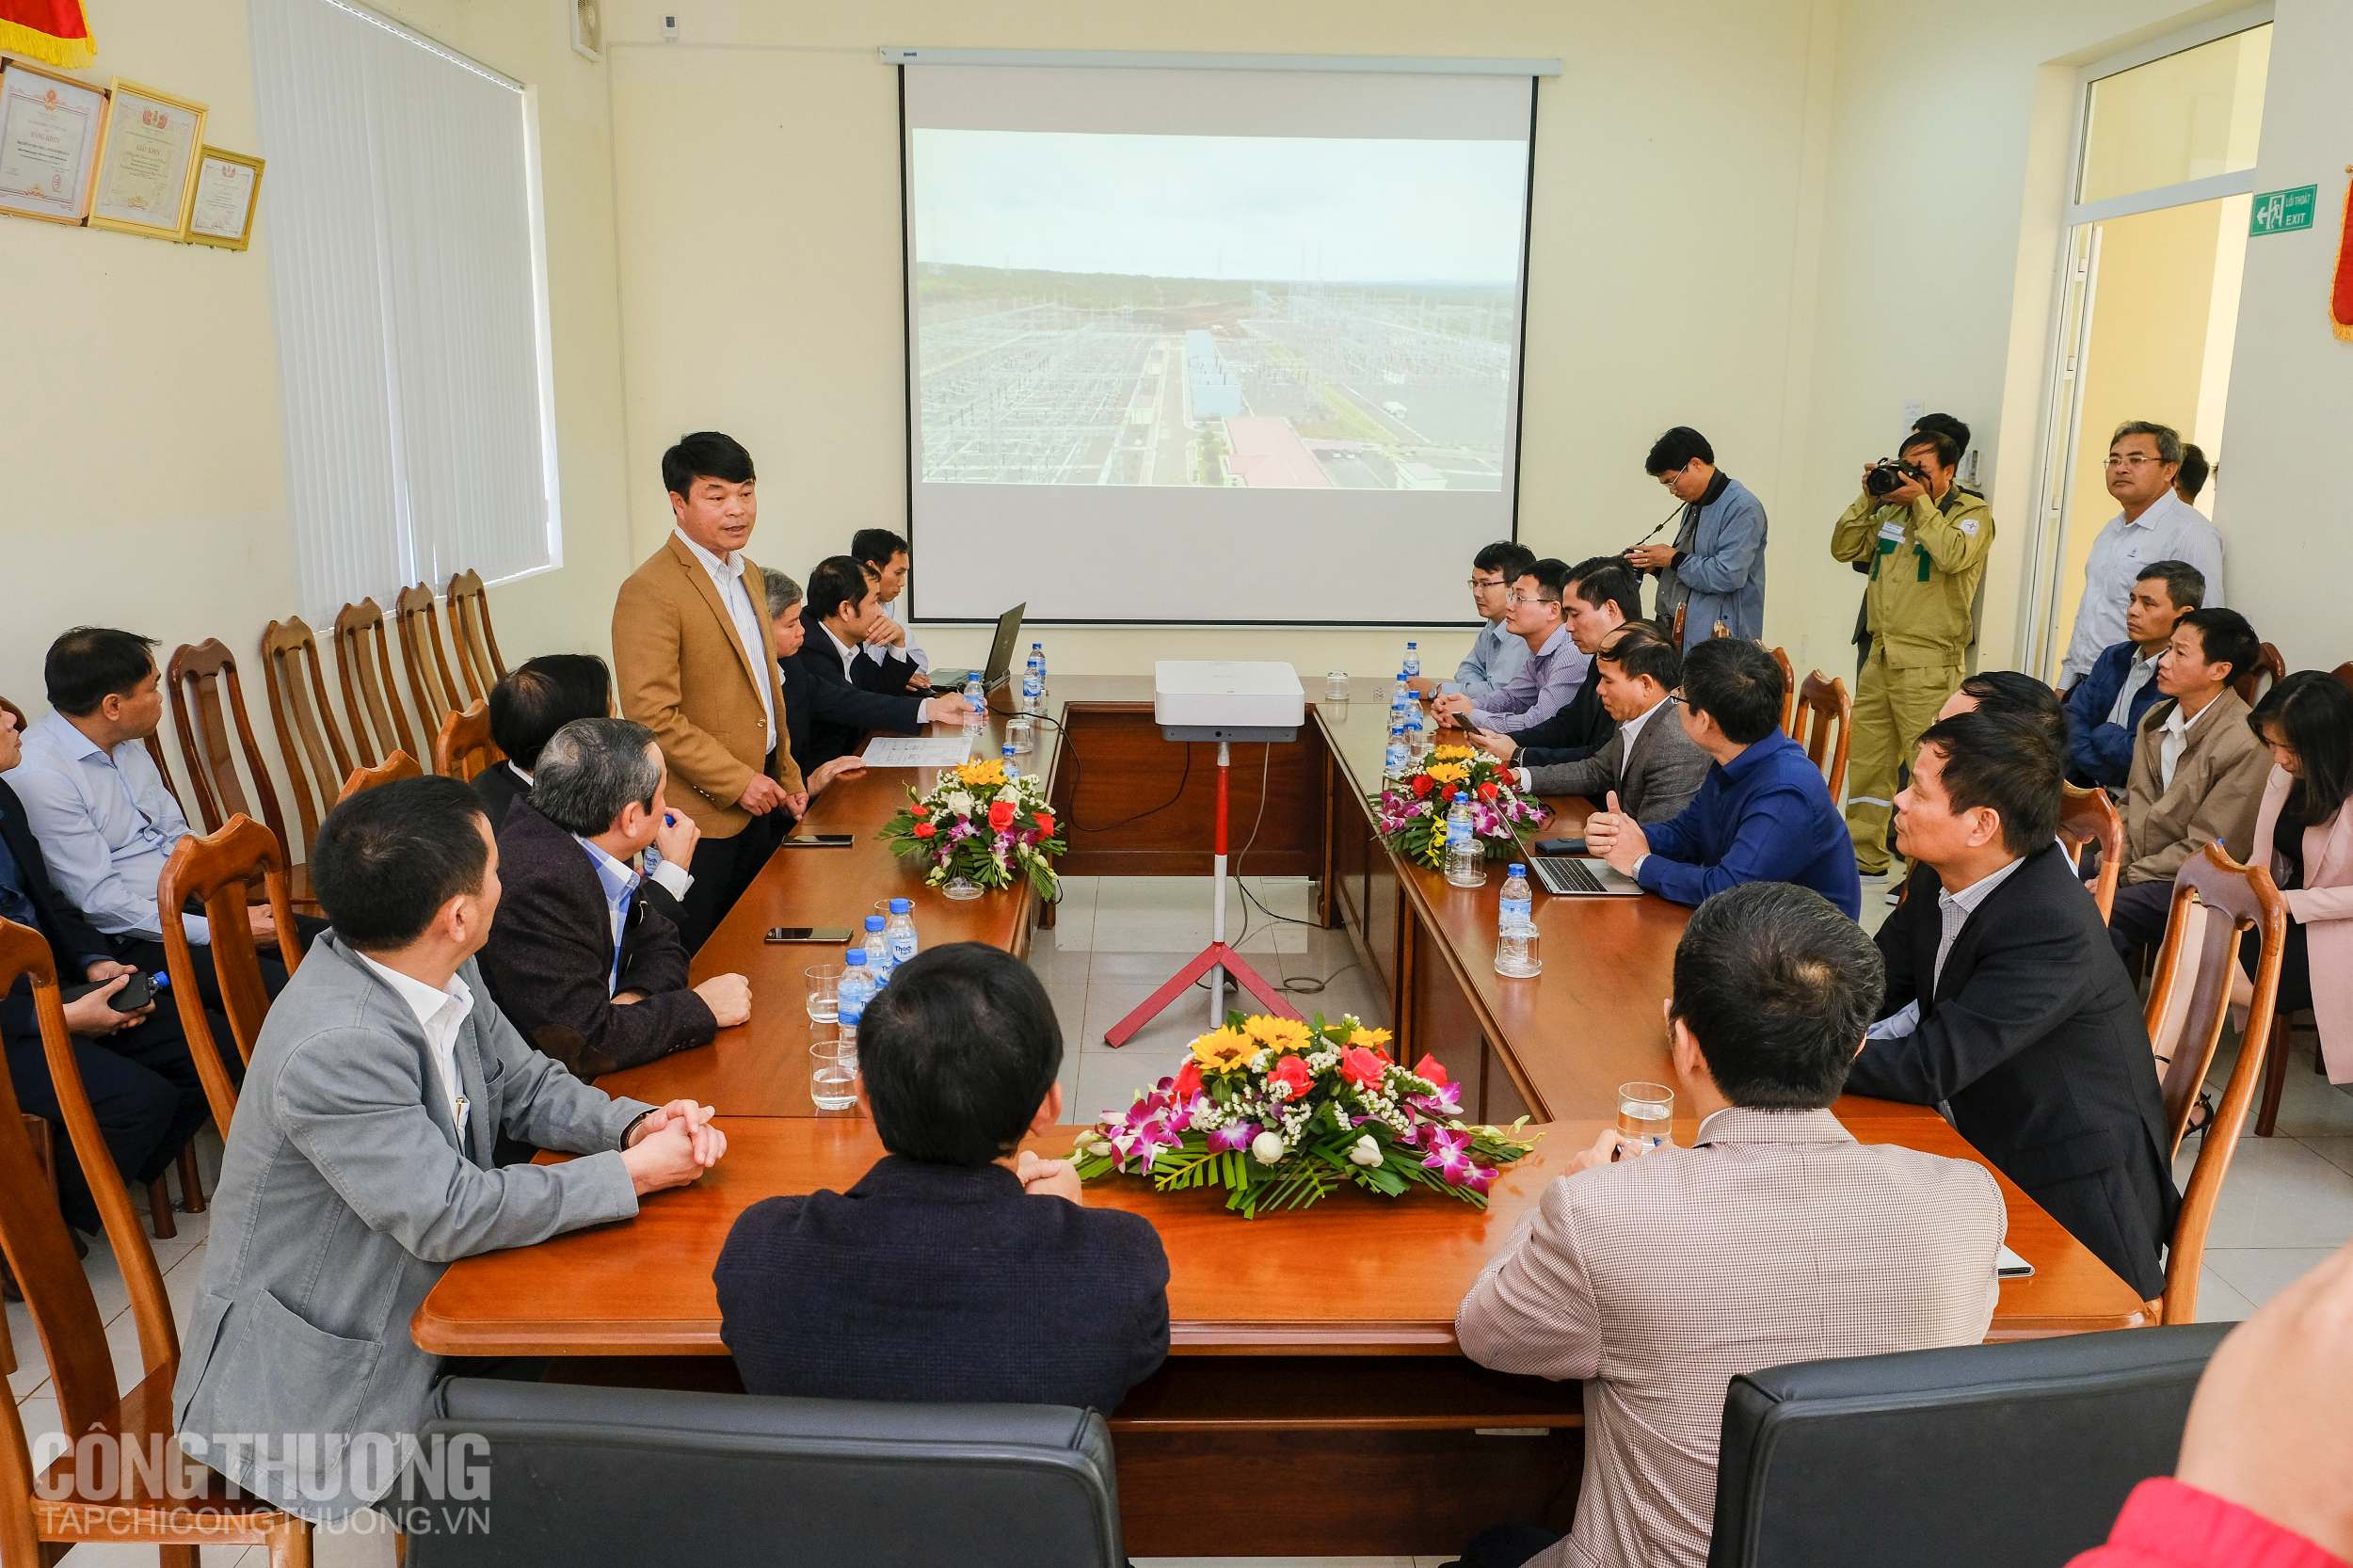 Bộ trưởng Trần Tuấn Anh (bên trái) và Bí thư Tỉnh ủy Gia Lai Dương Văn Trang (bên phải) chia sẻ với những nỗ lực của ngành điện Gia Lai thời gian qua